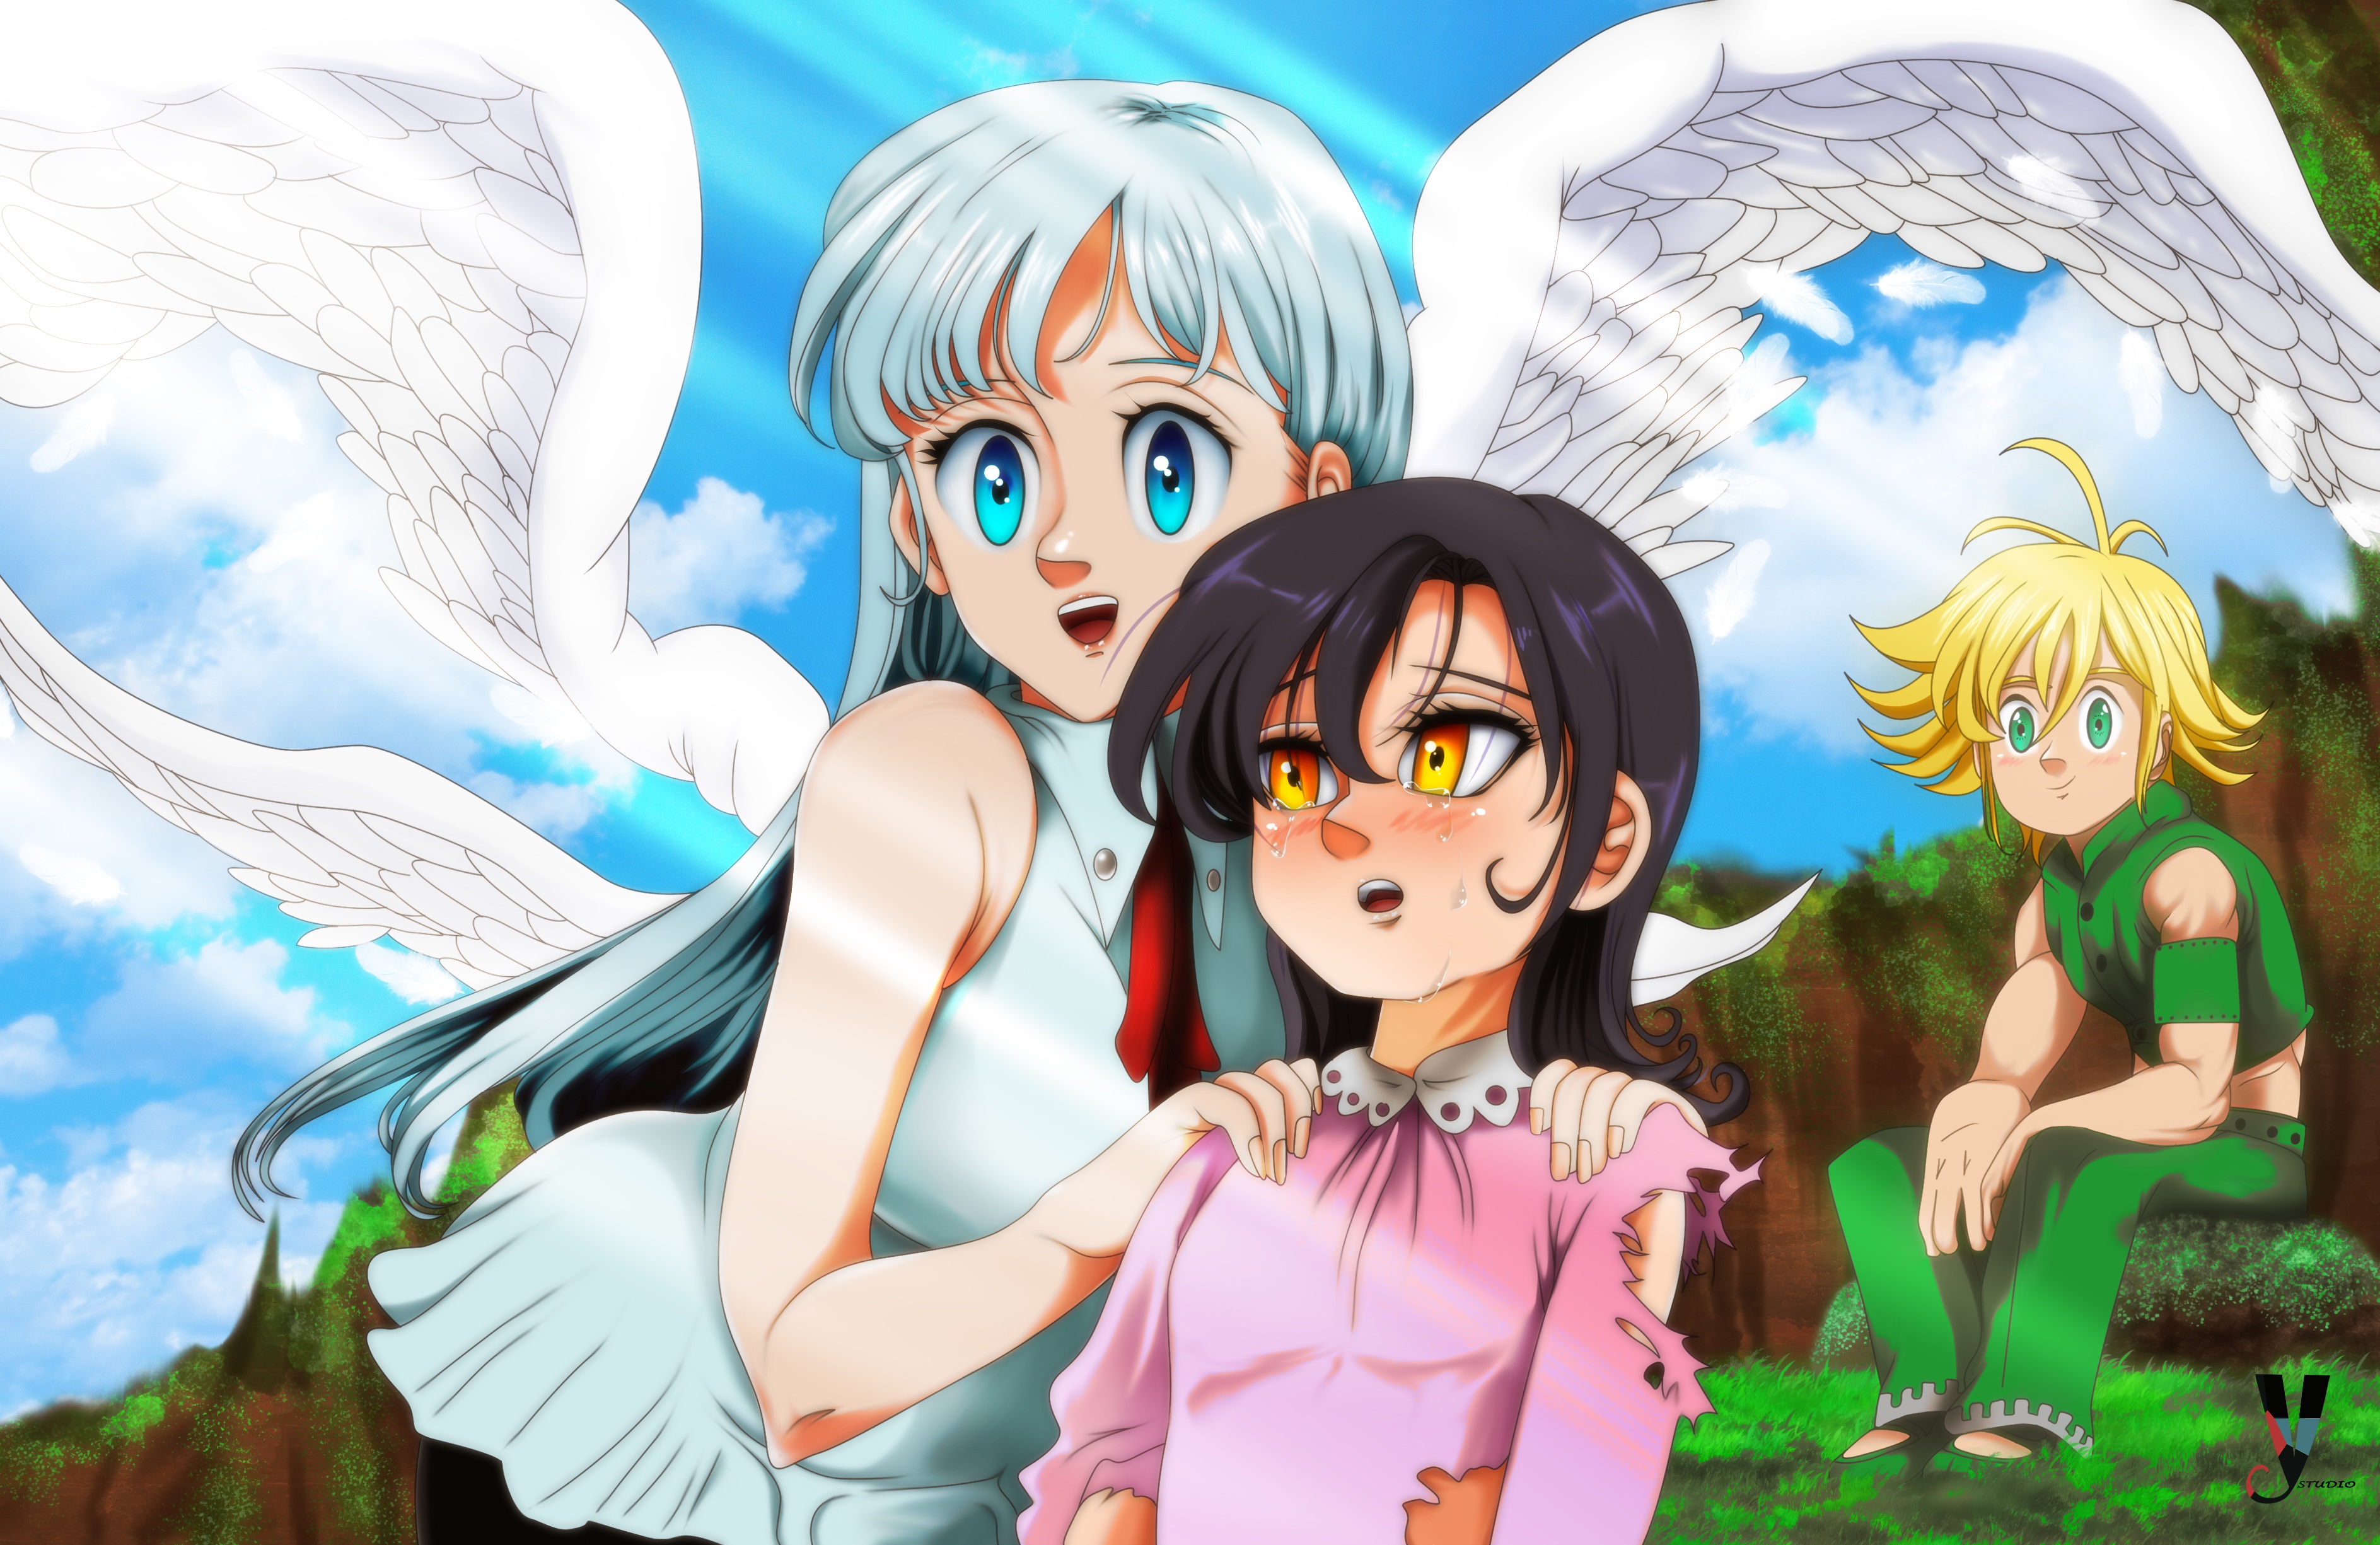 Merlin  Anime Seven deadly sins Anime art